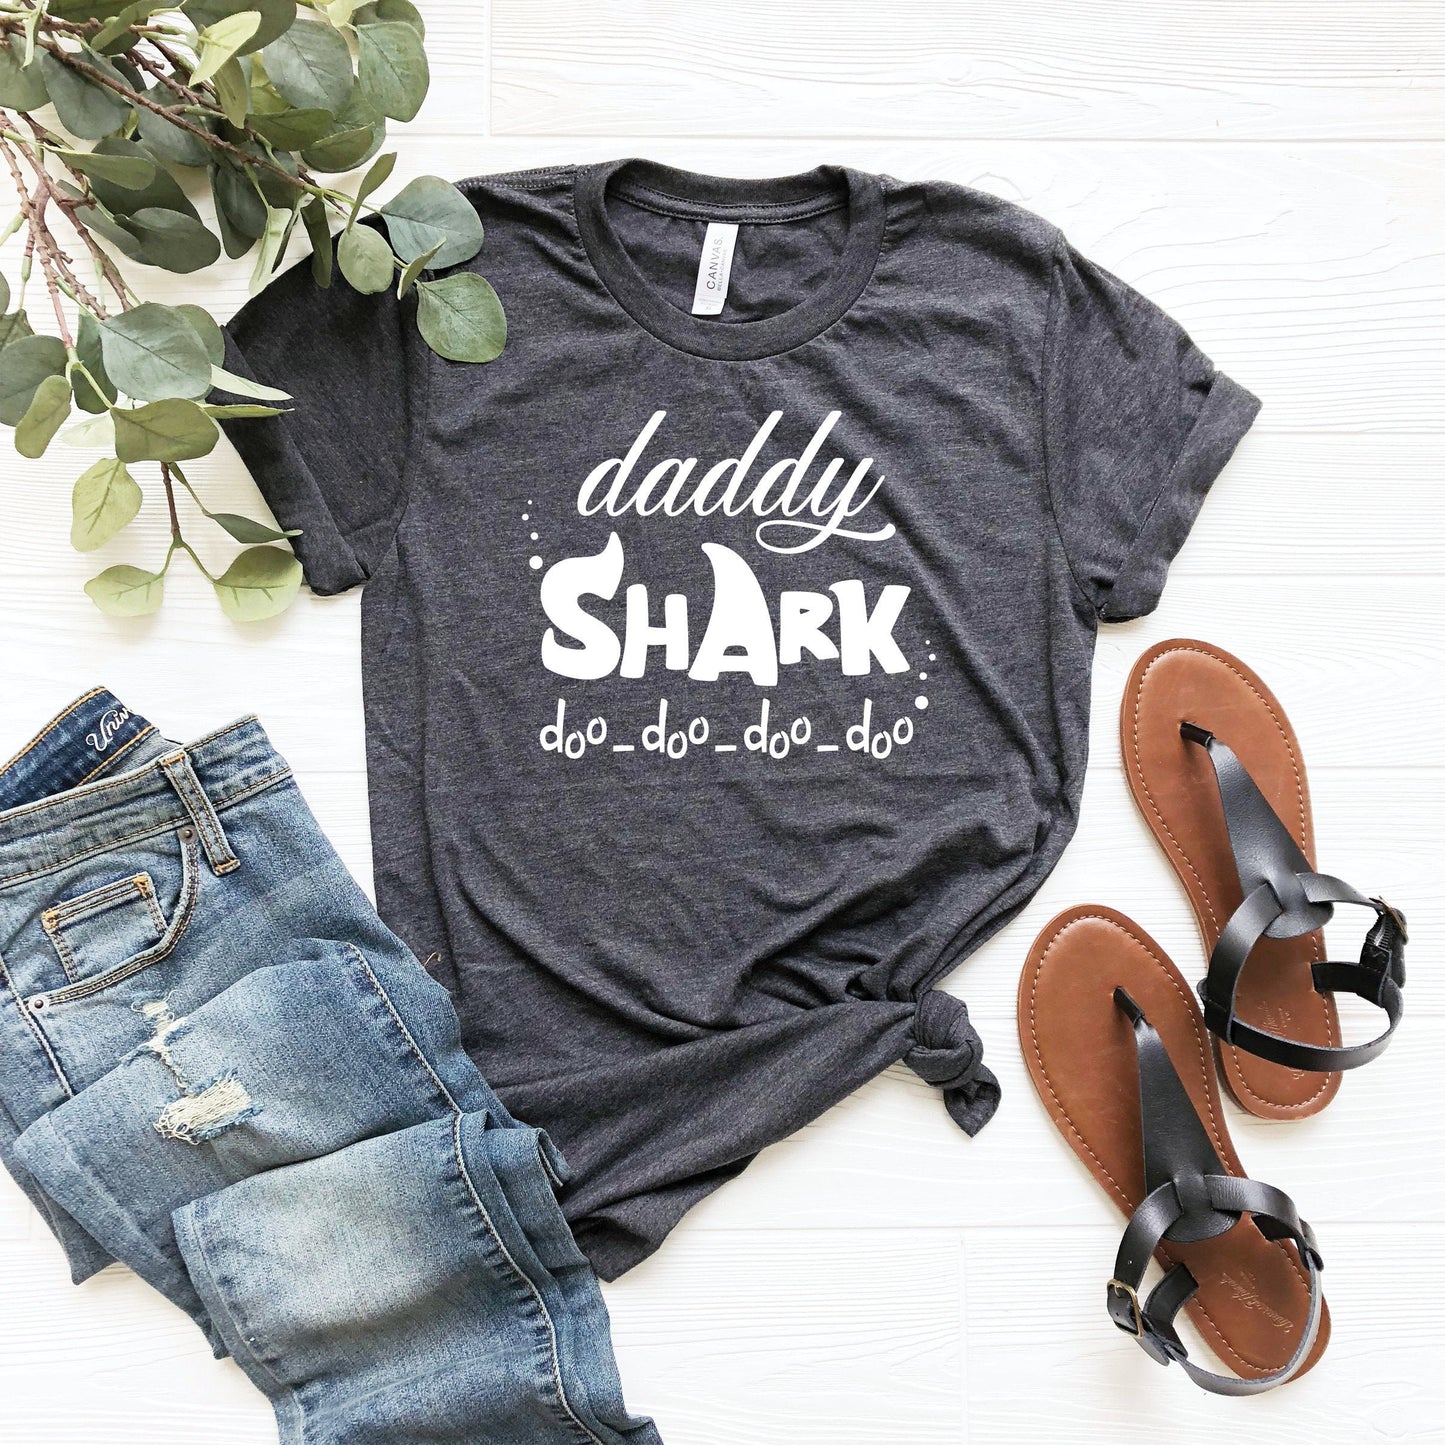 Daddy Shark Doo Doo Doo Shirt